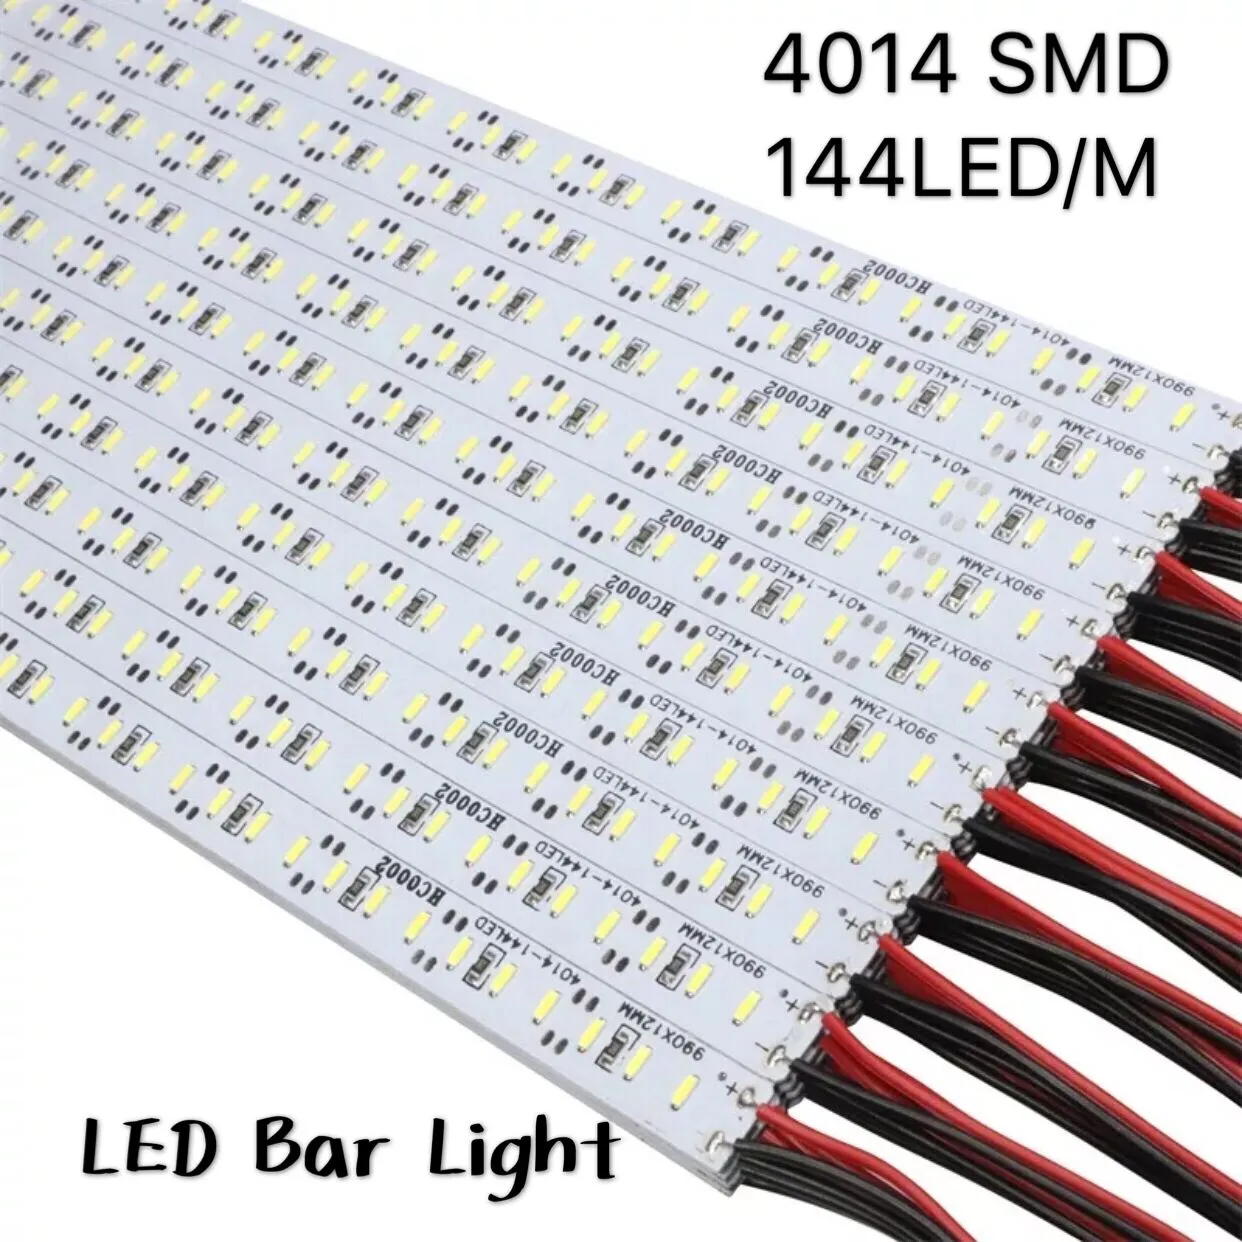 smd-4014-led-strip-100cm-led-rigido-bar-led.jpg